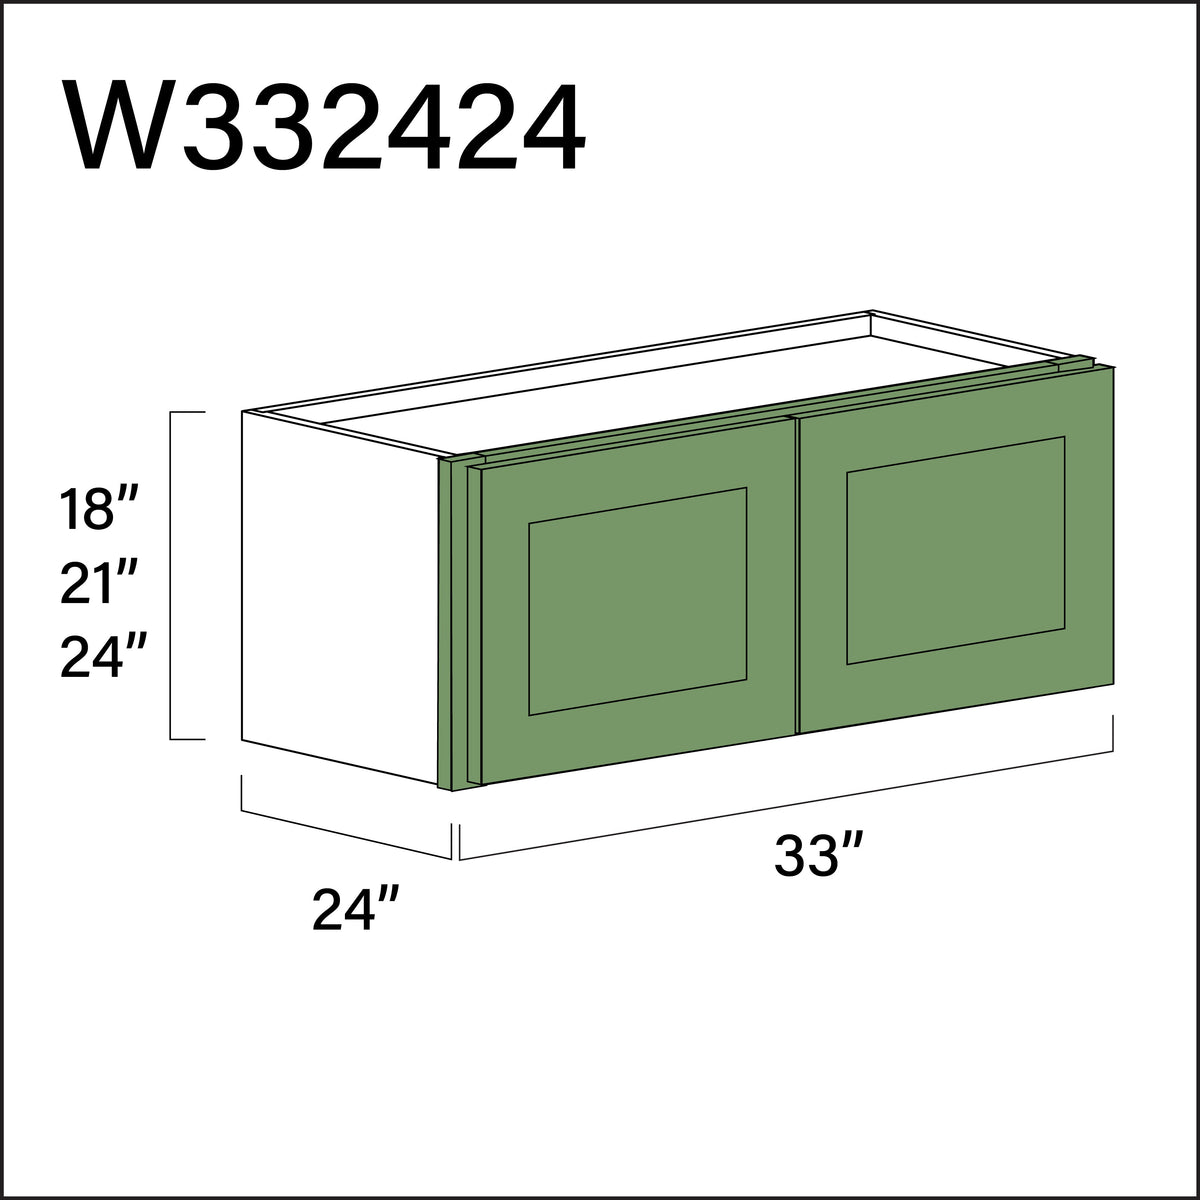 Jade Shaker Wall Bridge Double Door Cabinet - 33" W x 24" H x 24" D